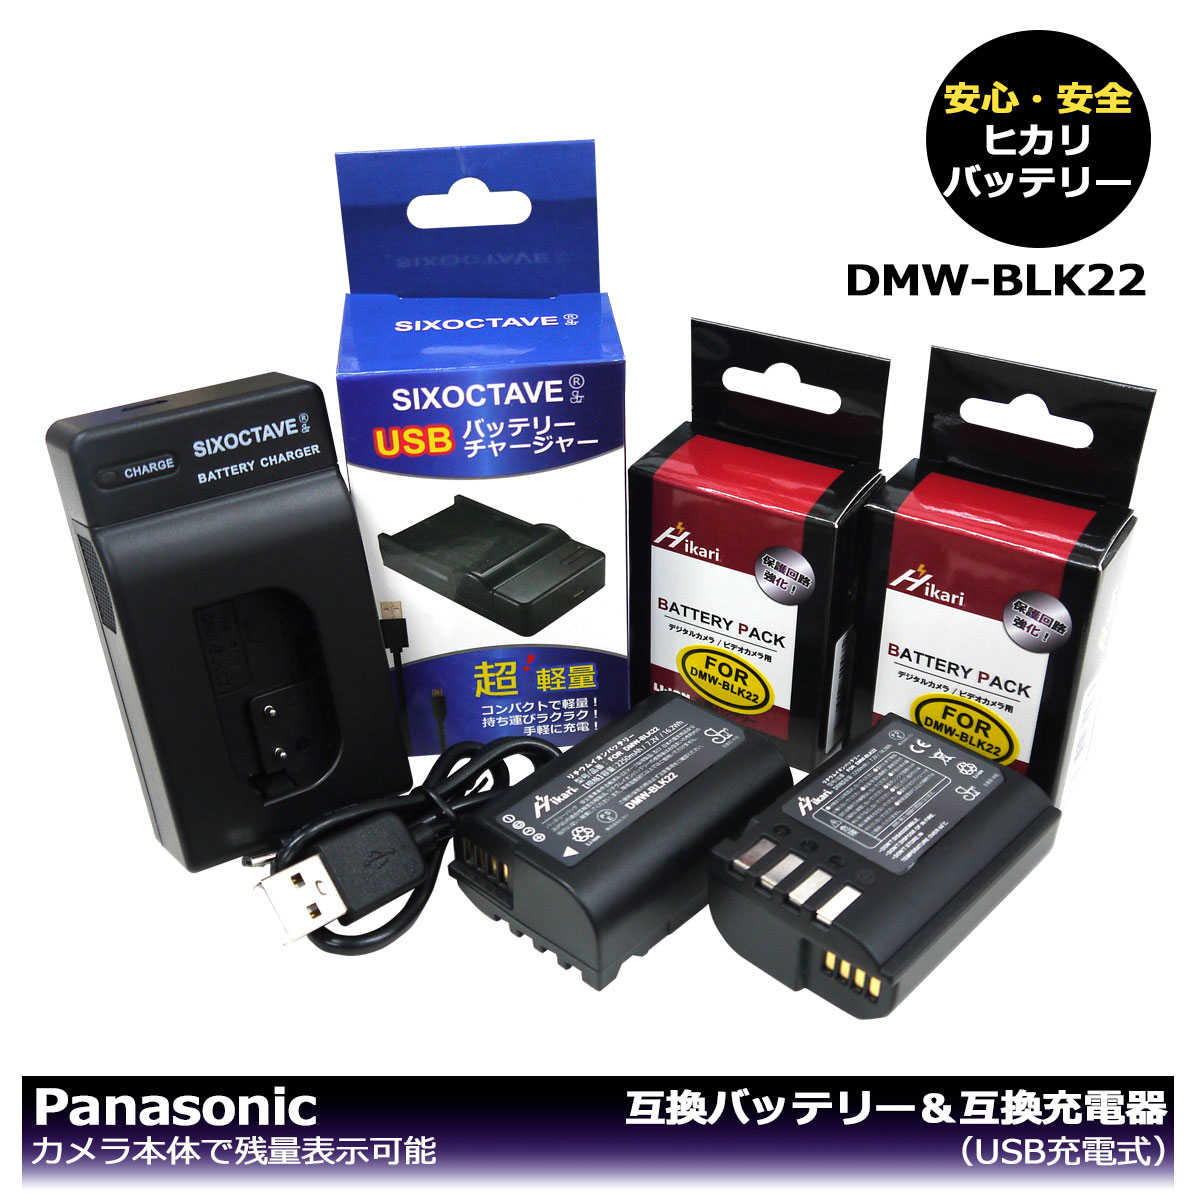 流行 DMW-BLK22 送料無料 PANASONIC 互換バッテリー 2個 と DUAL 互換